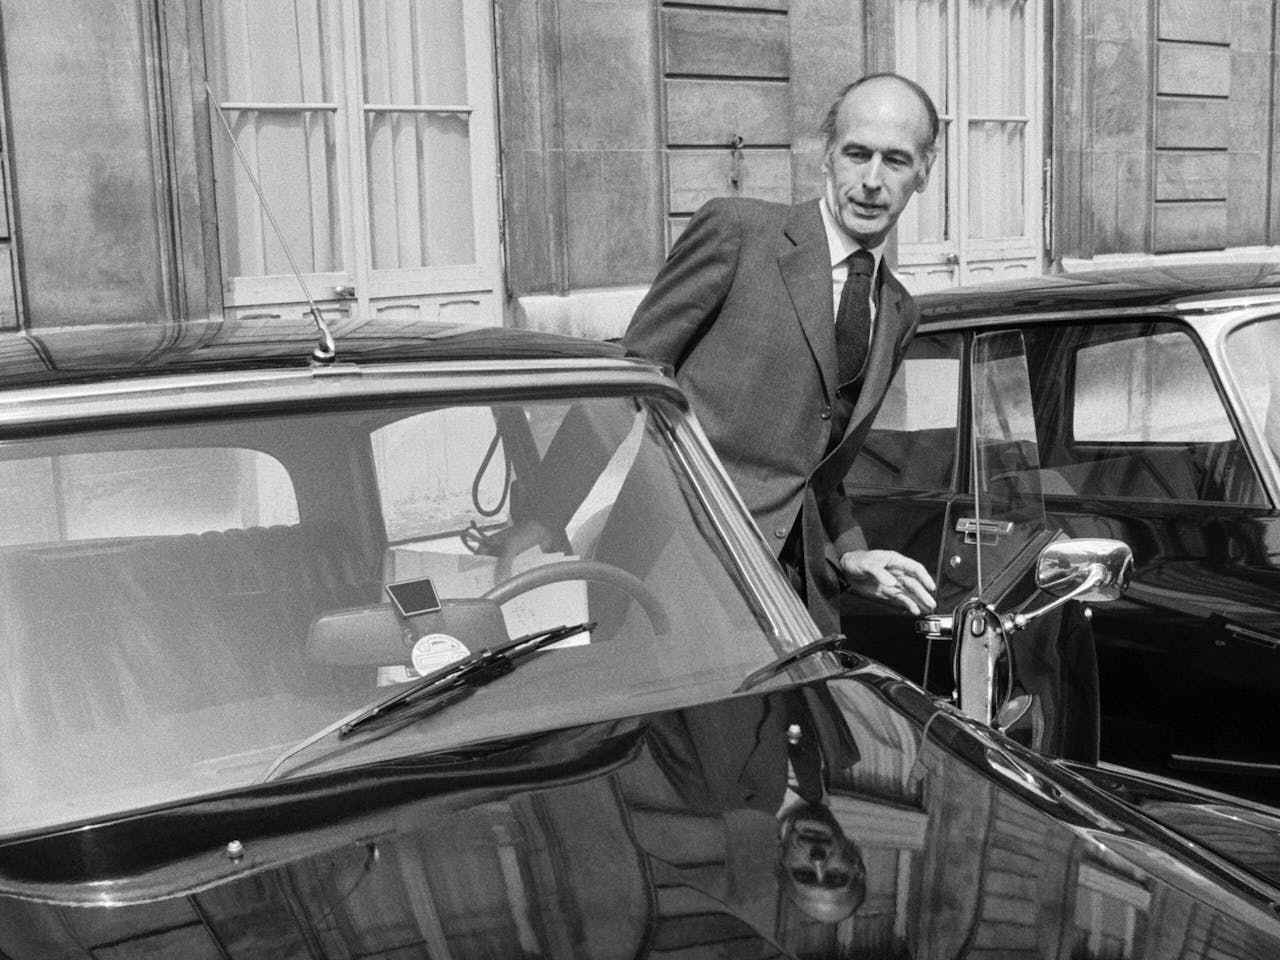 Stijl en goede smaak waren wel besteed aan Giscard. De ritjes naar het Elysée verrichte de president niet zelden zelf achter het stuur van zijn glanzend zwarte Citroën DS.